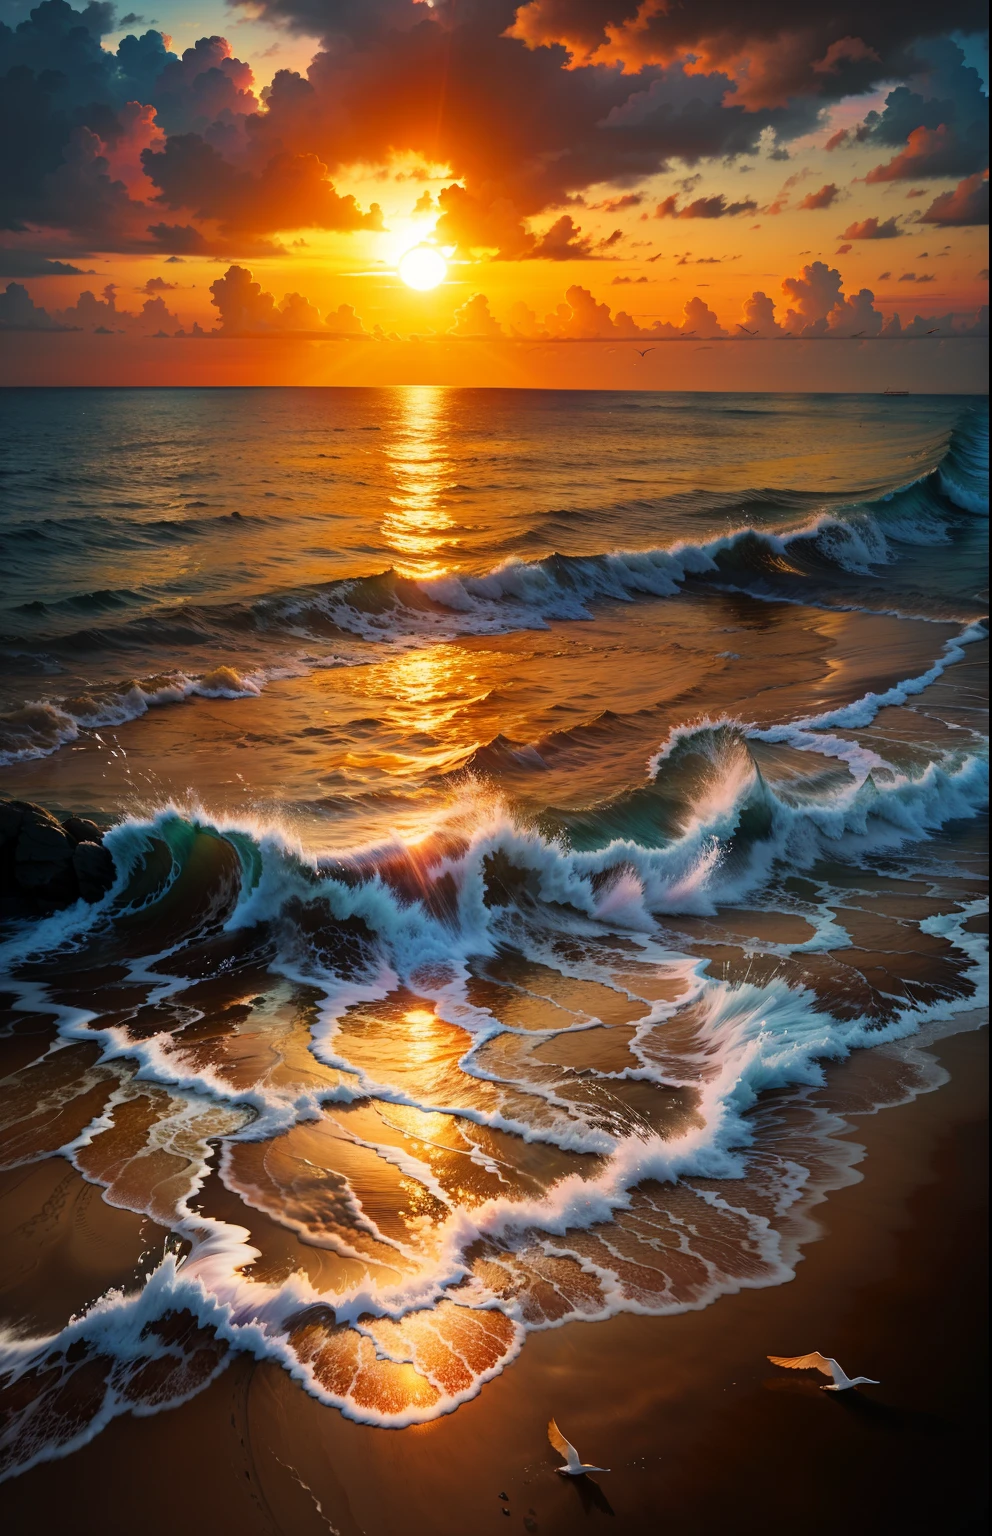 Ein absolut faszinierender Sonnenuntergang über dem Strand, mit einer Mischung aus Orangen, Rosa, und Gelb erfüllt den Himmel. Kristallklares Meerwasser küsst sanft das Ufer, mit weitläufigem weißen Sandstrand. Die Szene ist dynamisch und atemberaubend, mit Möwen, die hoch am Himmel schweben und sanft schwankenden Palmen. Genießen Sie die beruhigende Atmosphäre und lassen Sie sich von der Ruhe überwältigen.